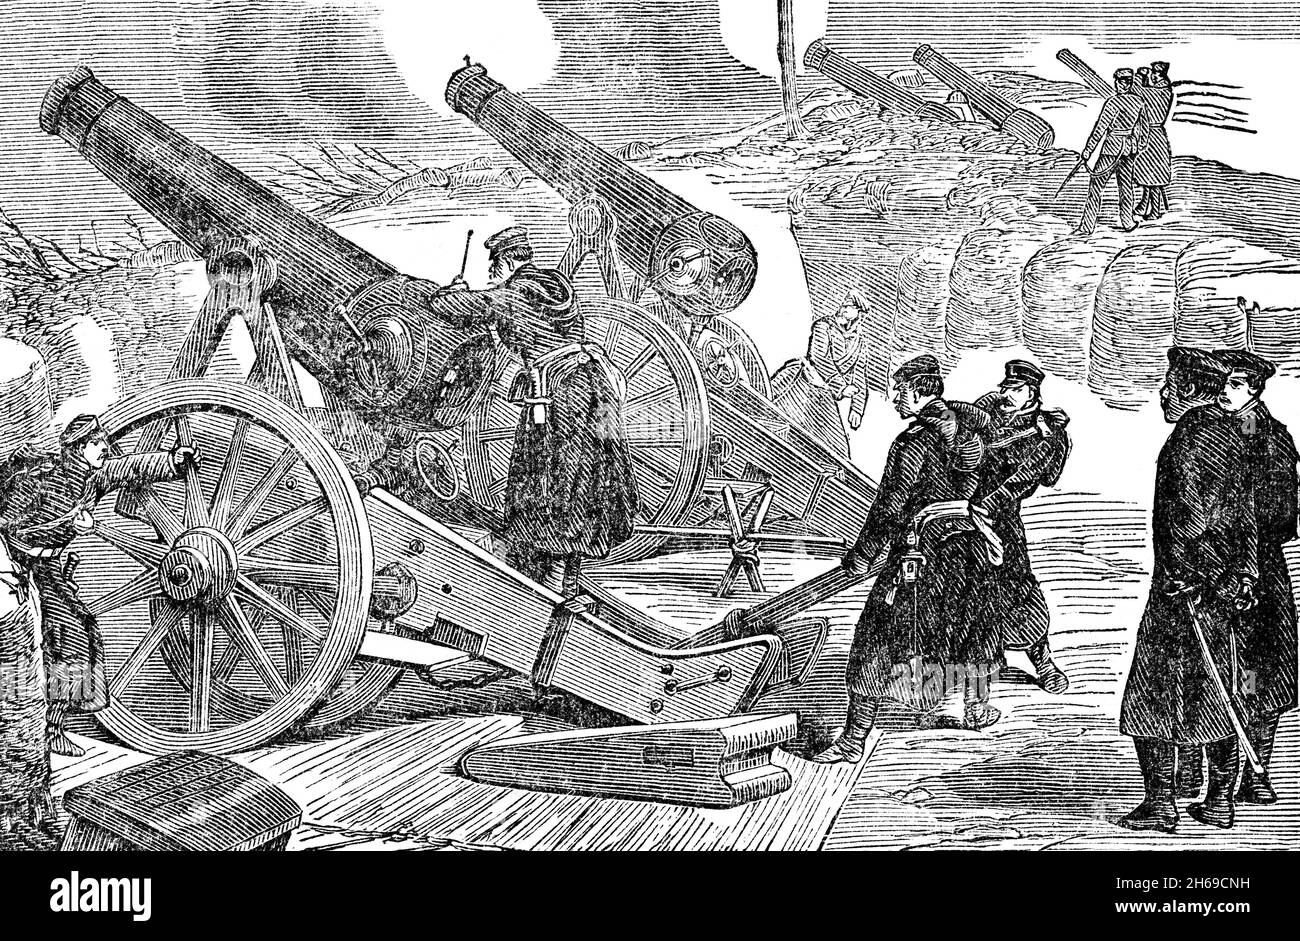 Illustration de la fin du XIXe siècle d'une batterie prussienne pendant le siège de Paris en 1870, lorsque les Allemands ont tiré quelque 12,000 obus, 300 à 400 grenades chaque jour dans la ville.Le siège de Paris pendant la guerre franco-prussienne ou la guerre franco-allemande a eu lieu du 19 septembre 1870 au 28 janvier 1871 et s'est achevé par la capture de la ville par les forces prussiennes, culminant par la défaite de la France dans la guerre franco-prussienne et l'établissement des deux Empire allemand. Banque D'Images